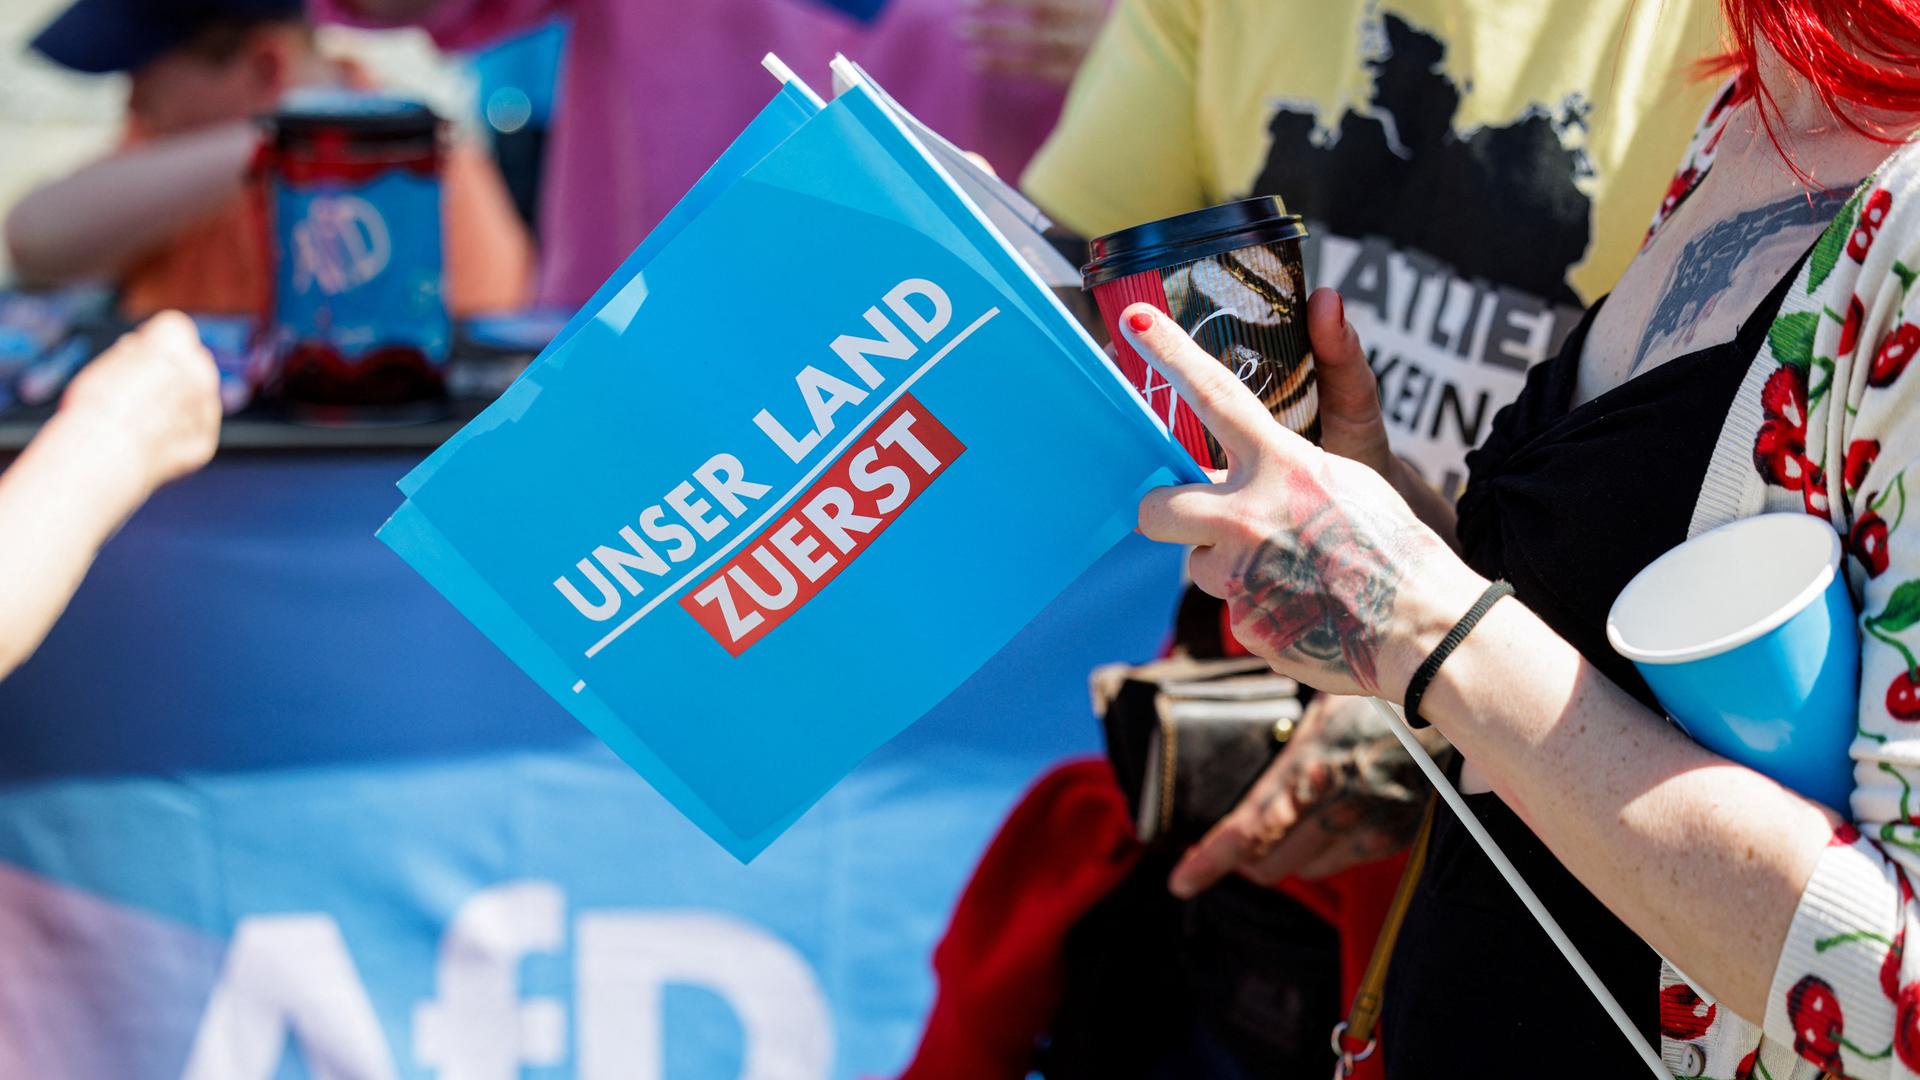 Ein Anhänger der Alternative für Deutschland (AfD) hält eine kleine Fahne mit dem Slogan „Unser Land zuerst“ während einer Wahlkampfveranstaltung für die bevorstehenden Wahlen zum Europäischen Parlament und vor den sächsischen Kommunal- und Landtagswahlen in Dresden.